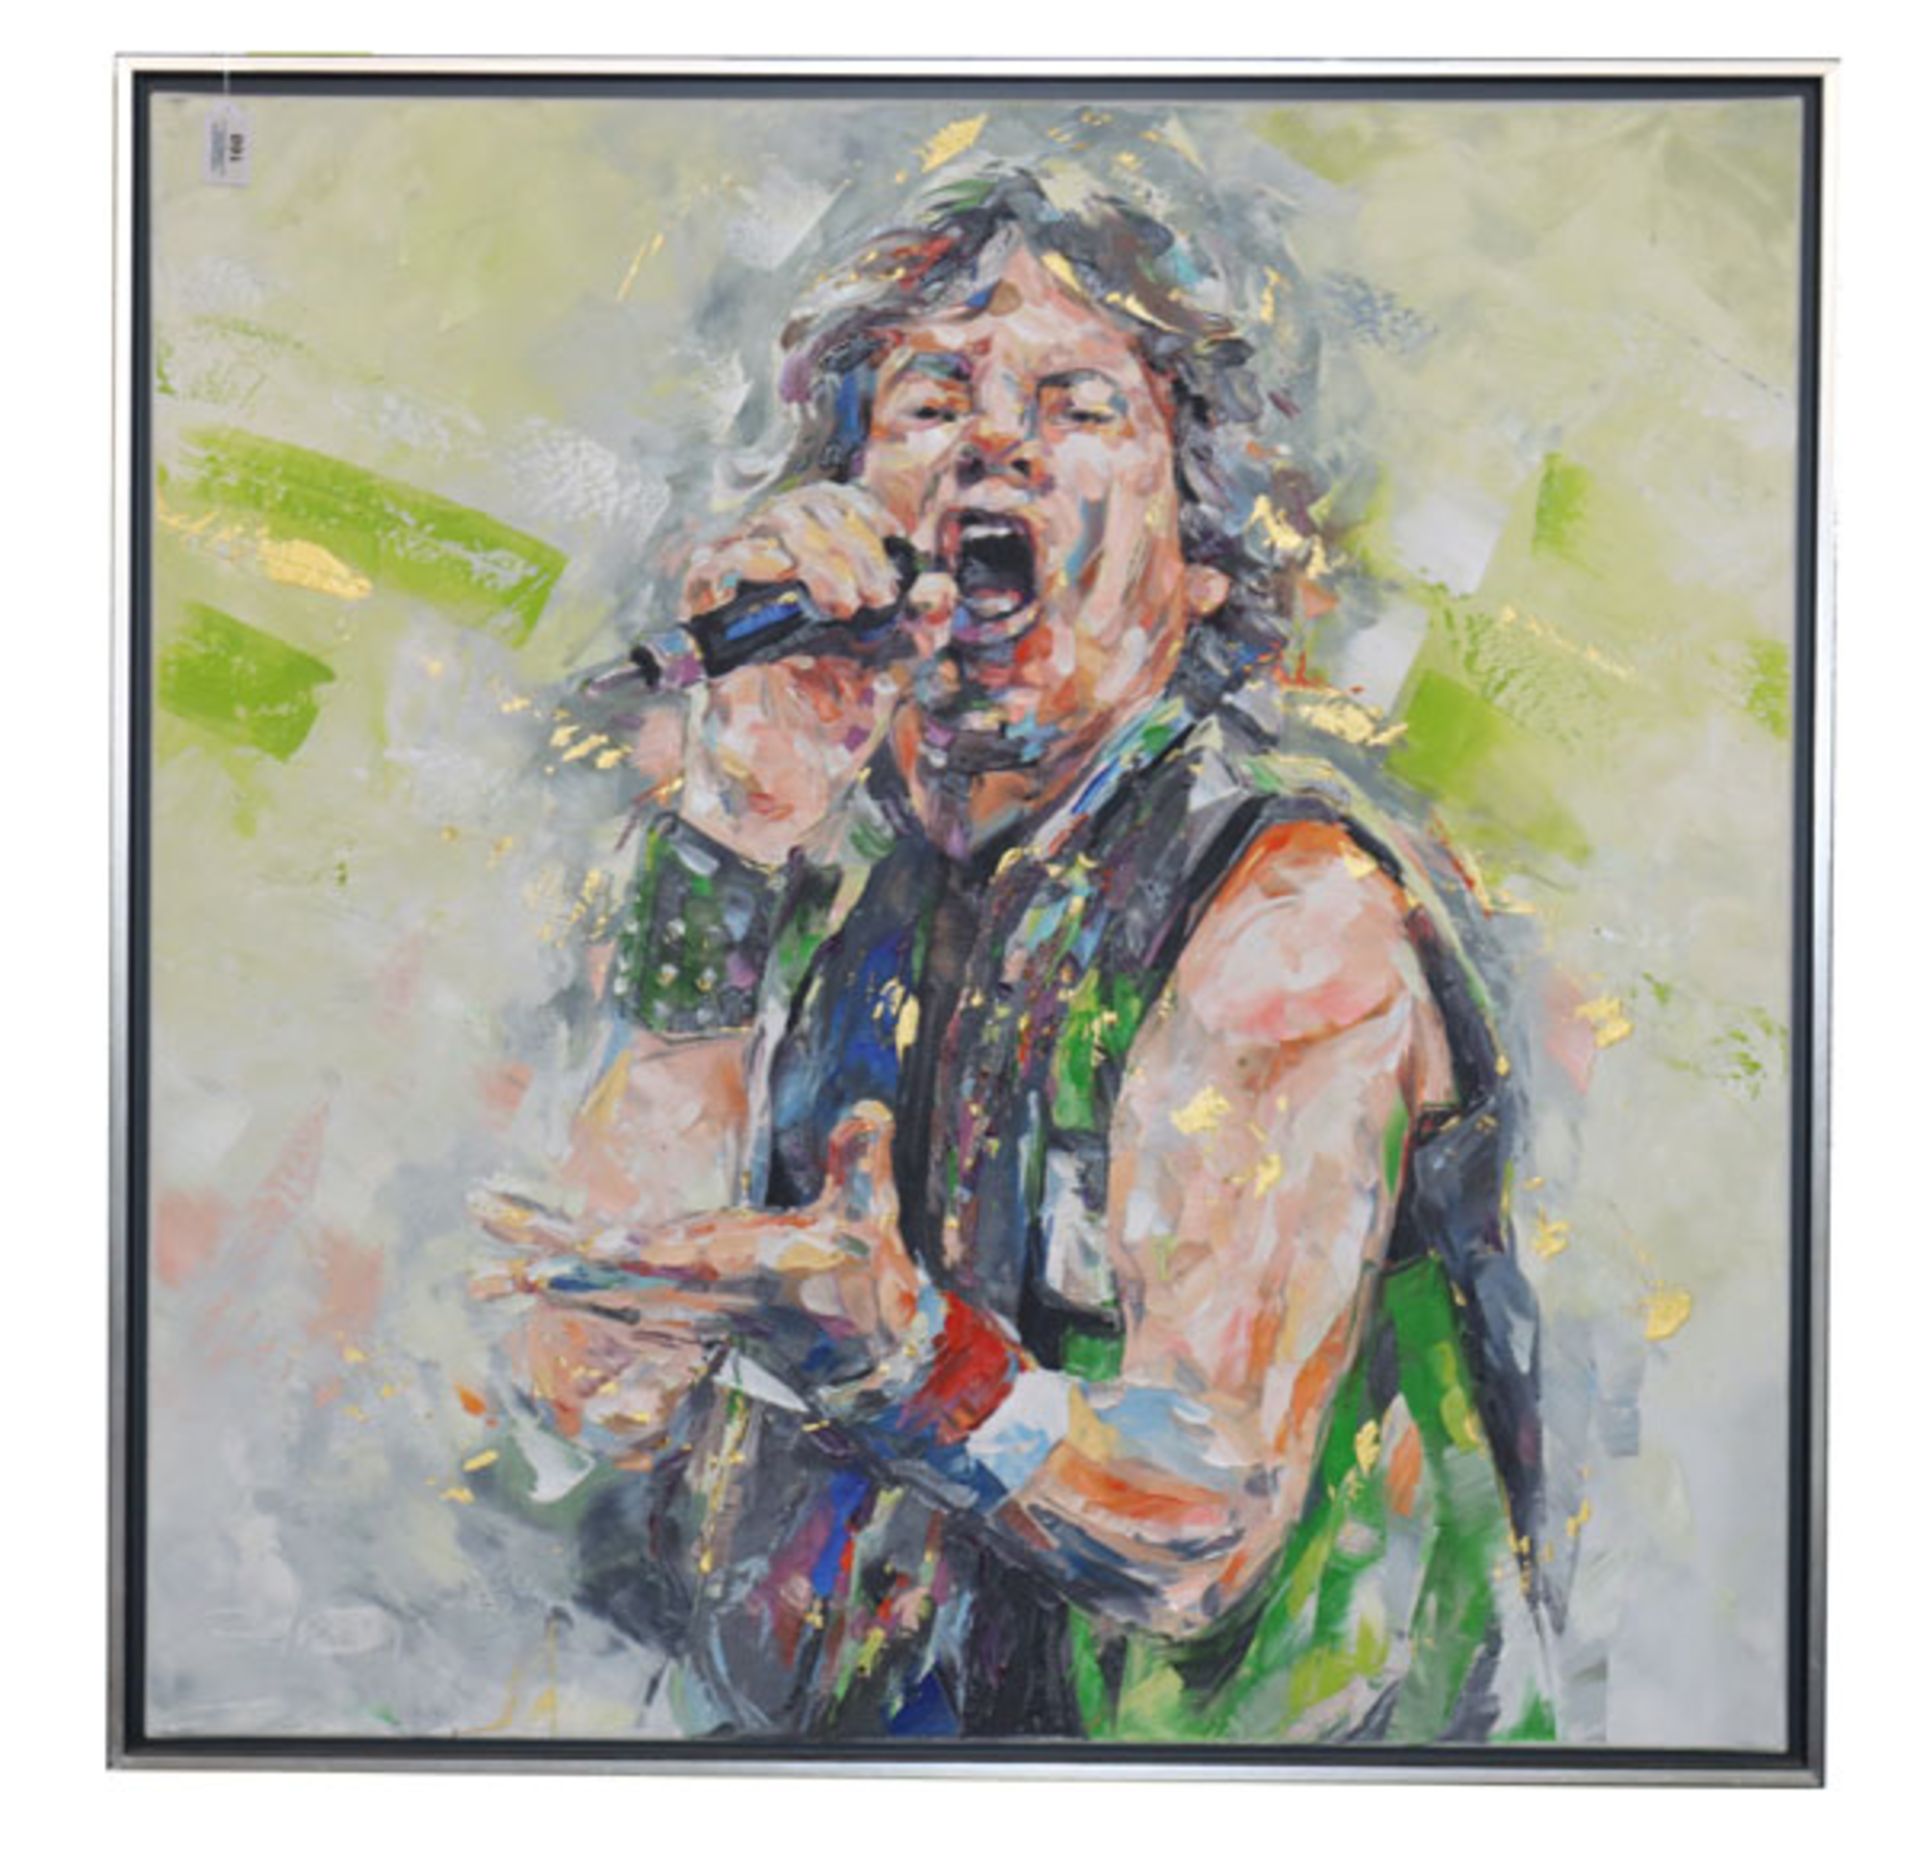 Gemälde ÖL/LW 'Bildnis von Mick Jagger', undeutlich signiert datiert 20, gerahmt, Rahmen leicht